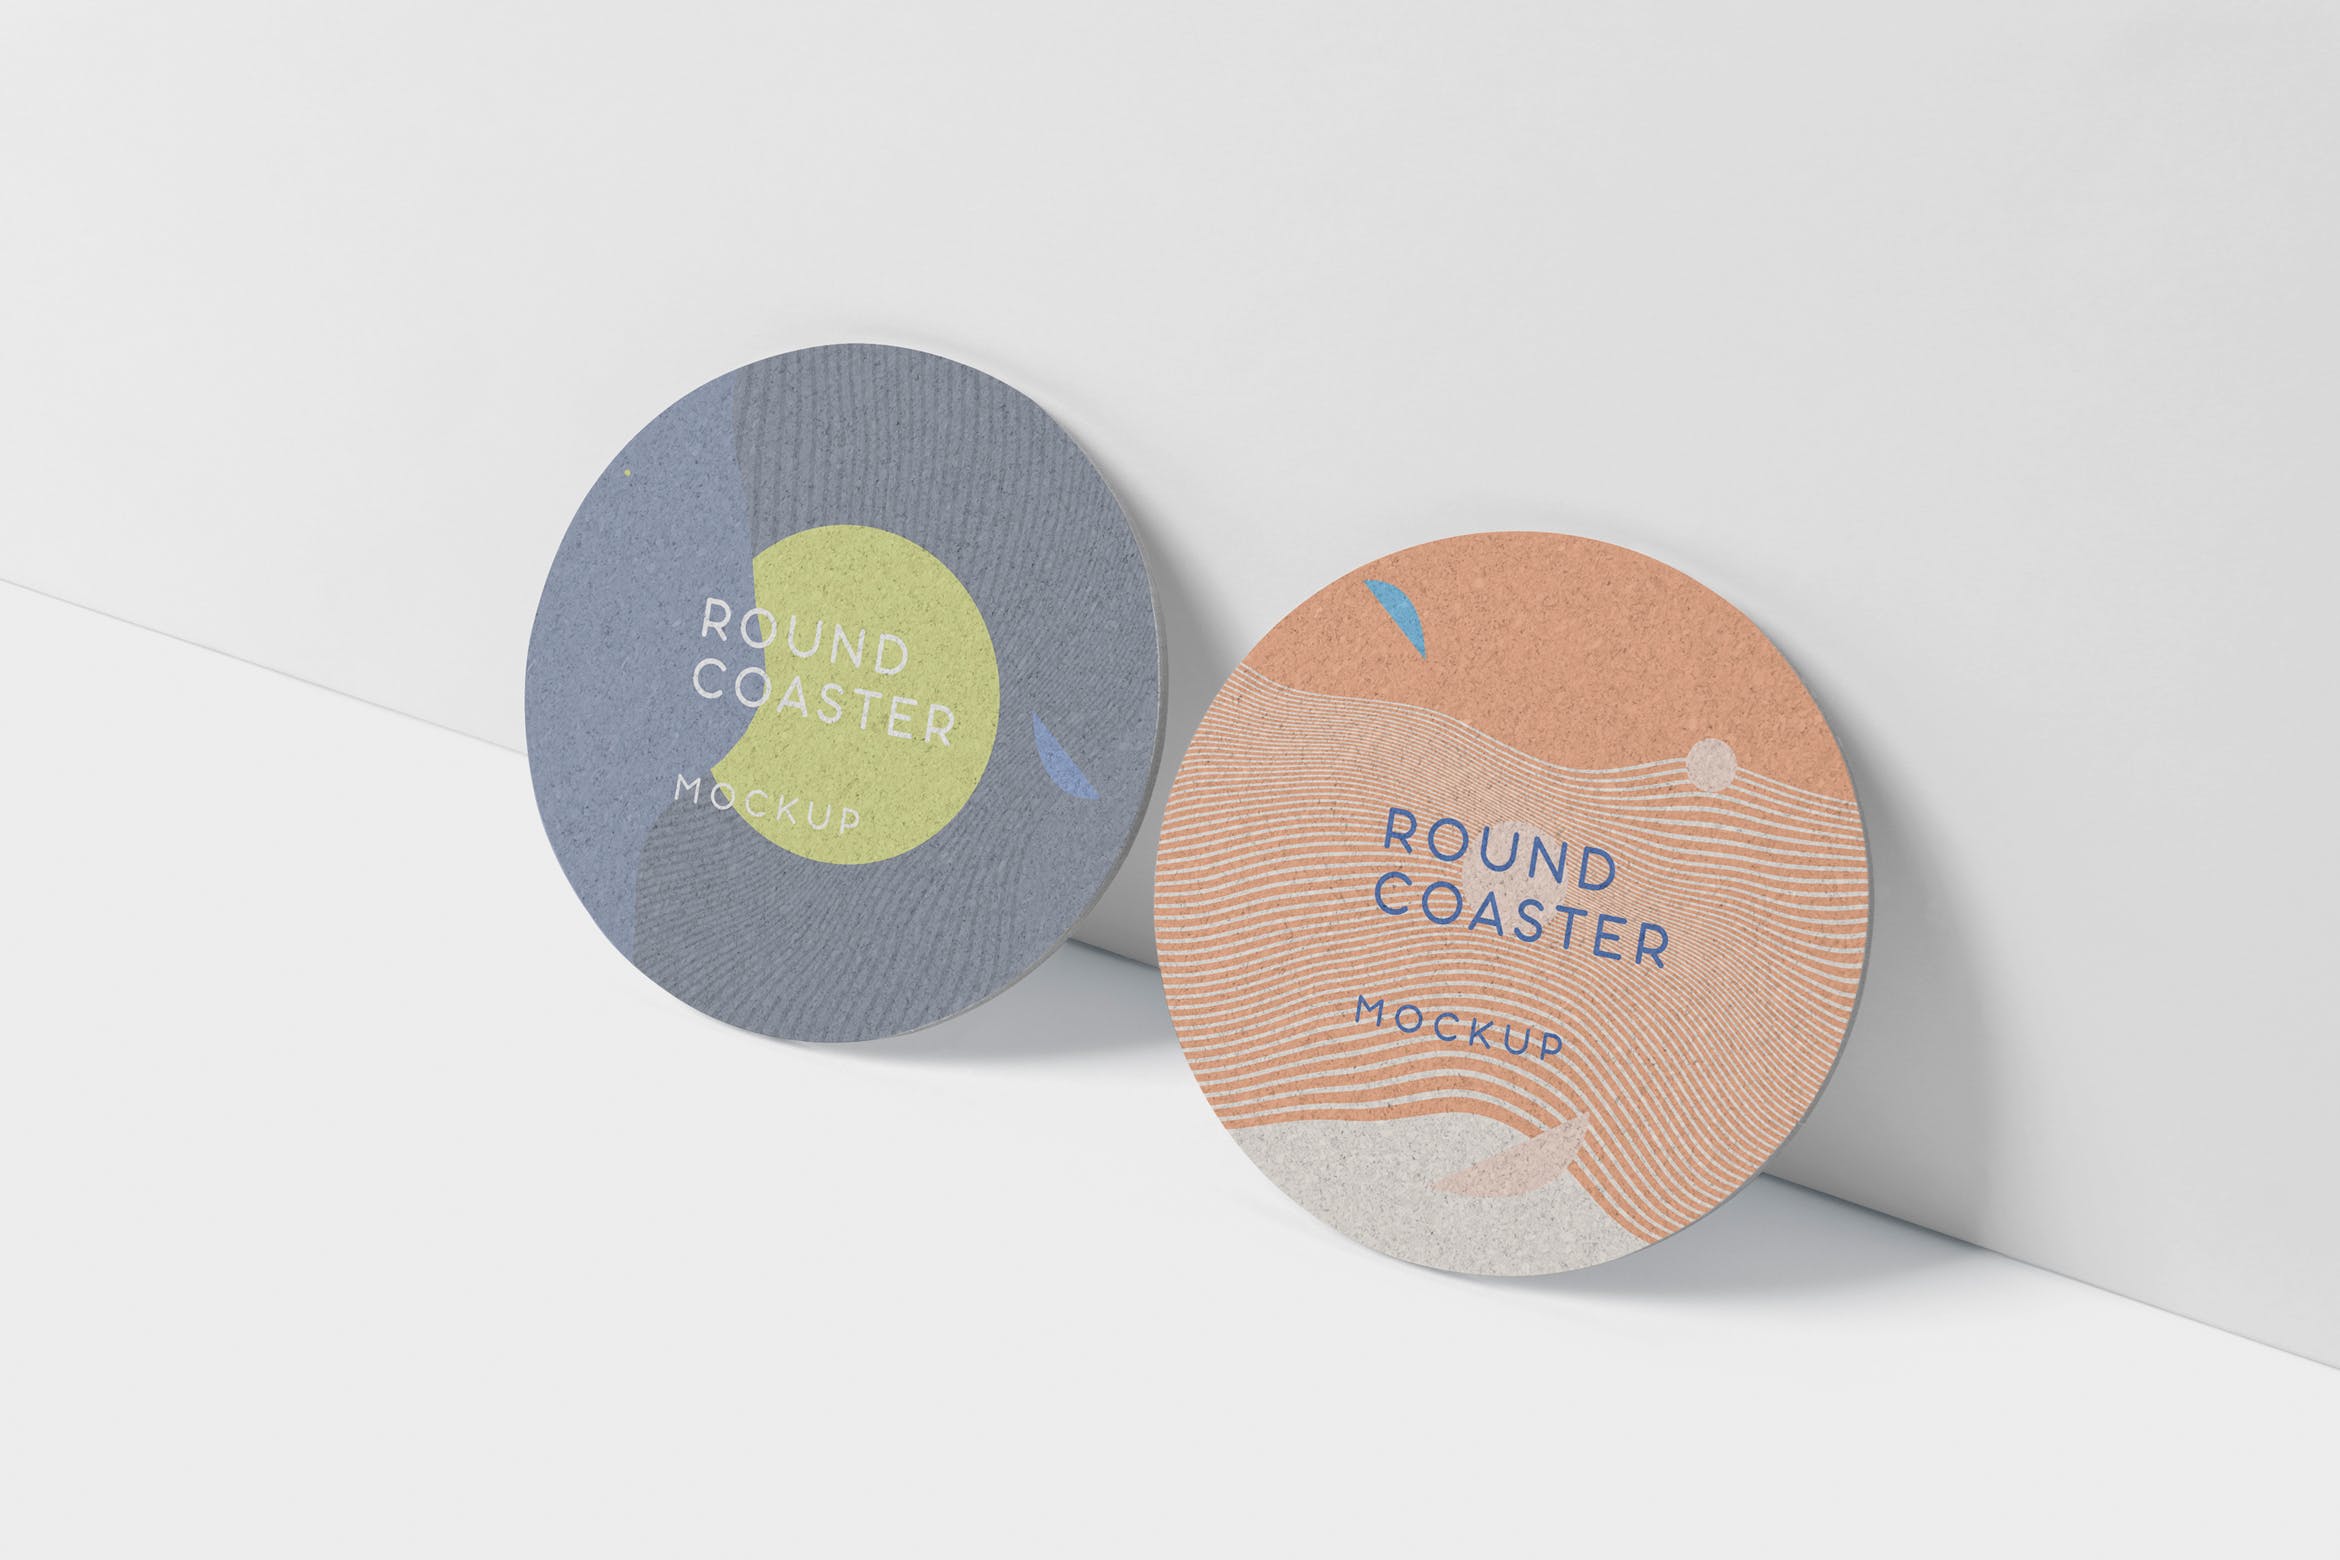 圆形杯垫图案设计效果图第一素材精选 Round Coaster Mock-Up – Medium Size插图